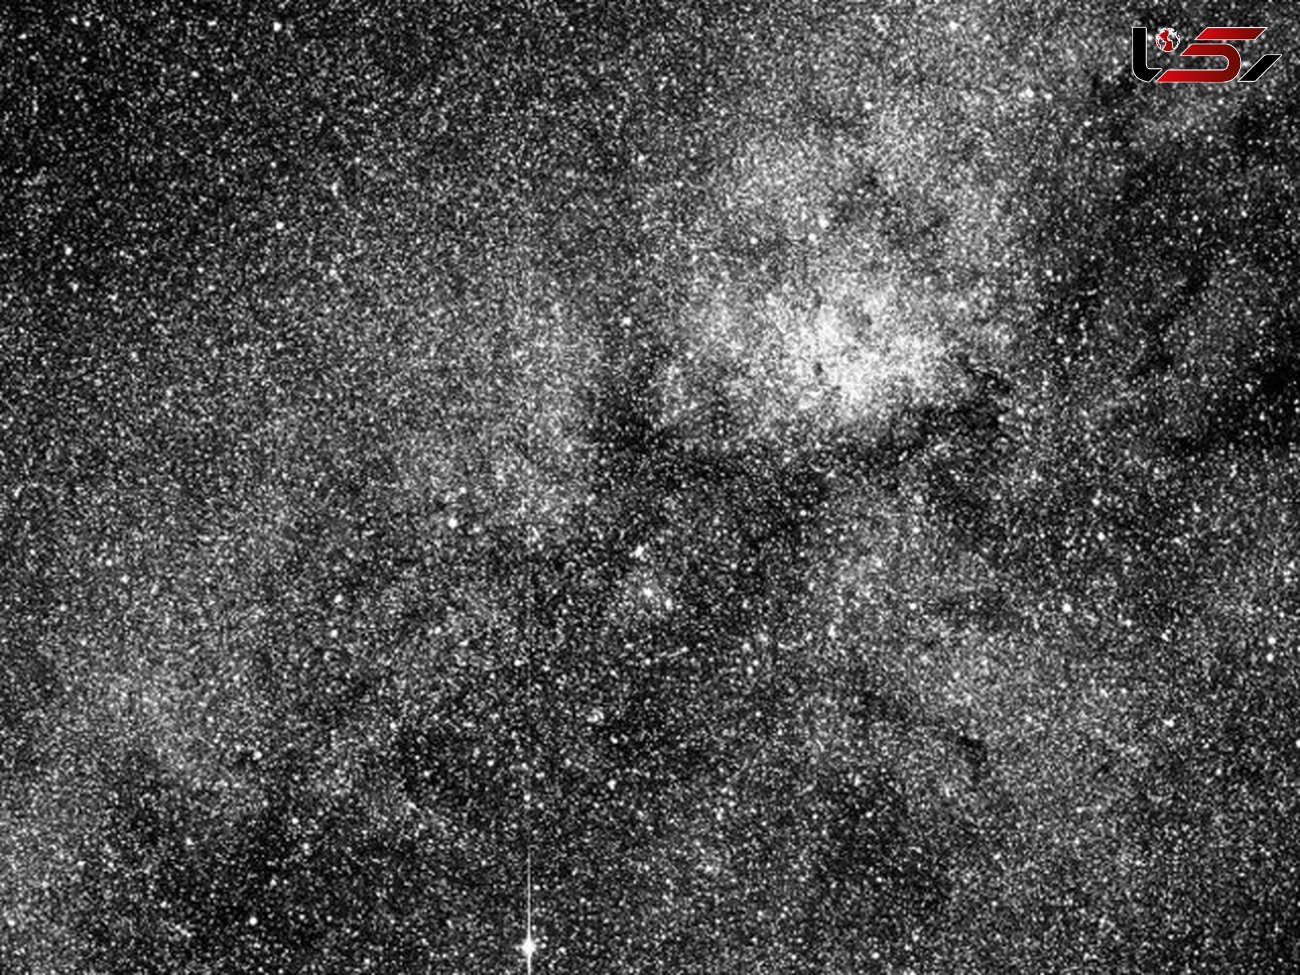  ماهواره "تس" تصویر 200 هزار ستاره در کهکشان را ثبت شد